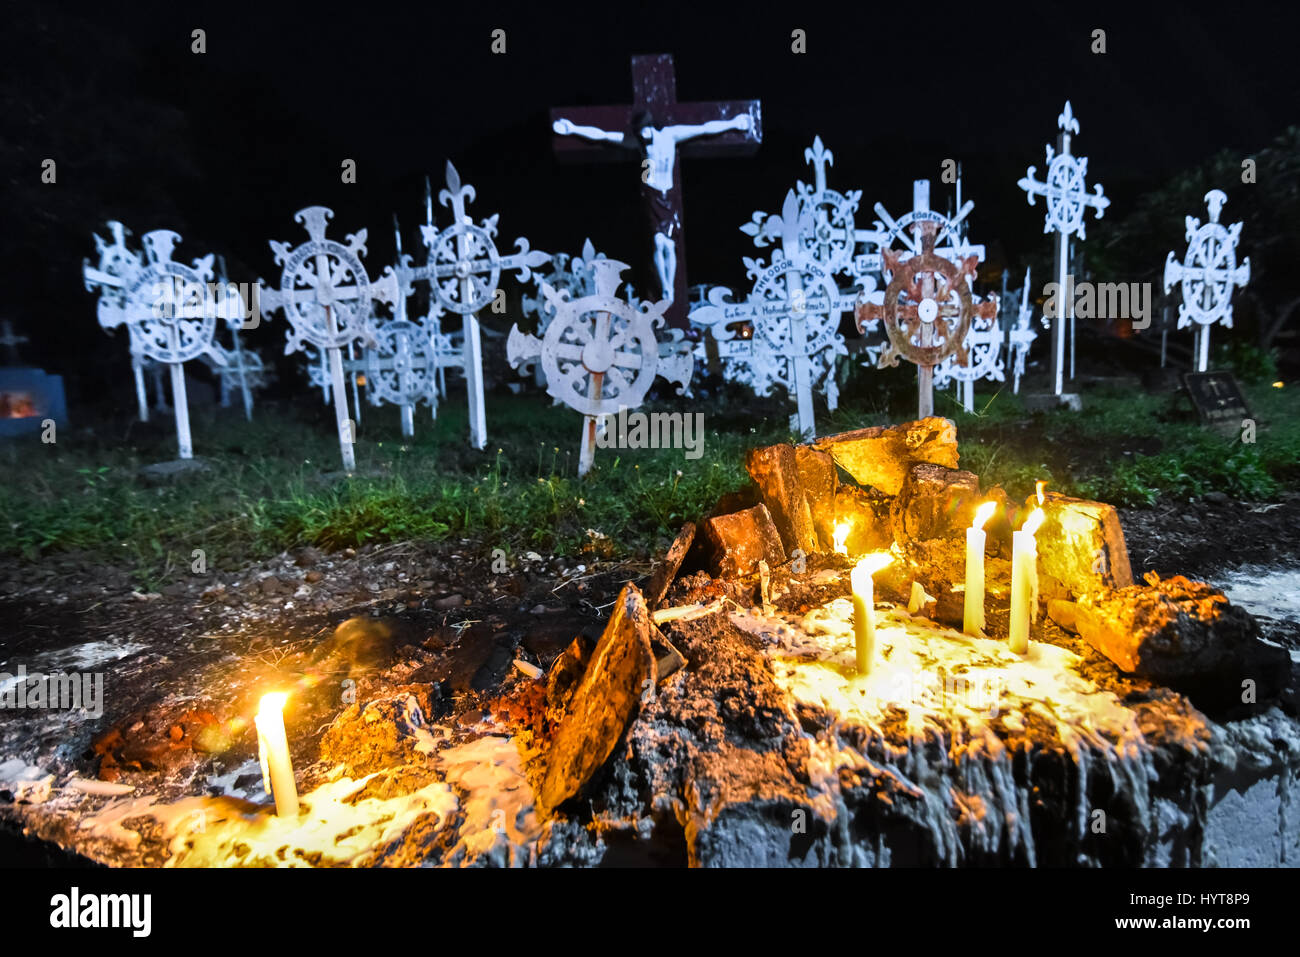 Kerzenlicht in der alten römisch-katholischen Kathedrale Friedhof von Larantuka mit der Statue der Kreuzigung Jesu im Hintergrund. Stockfoto